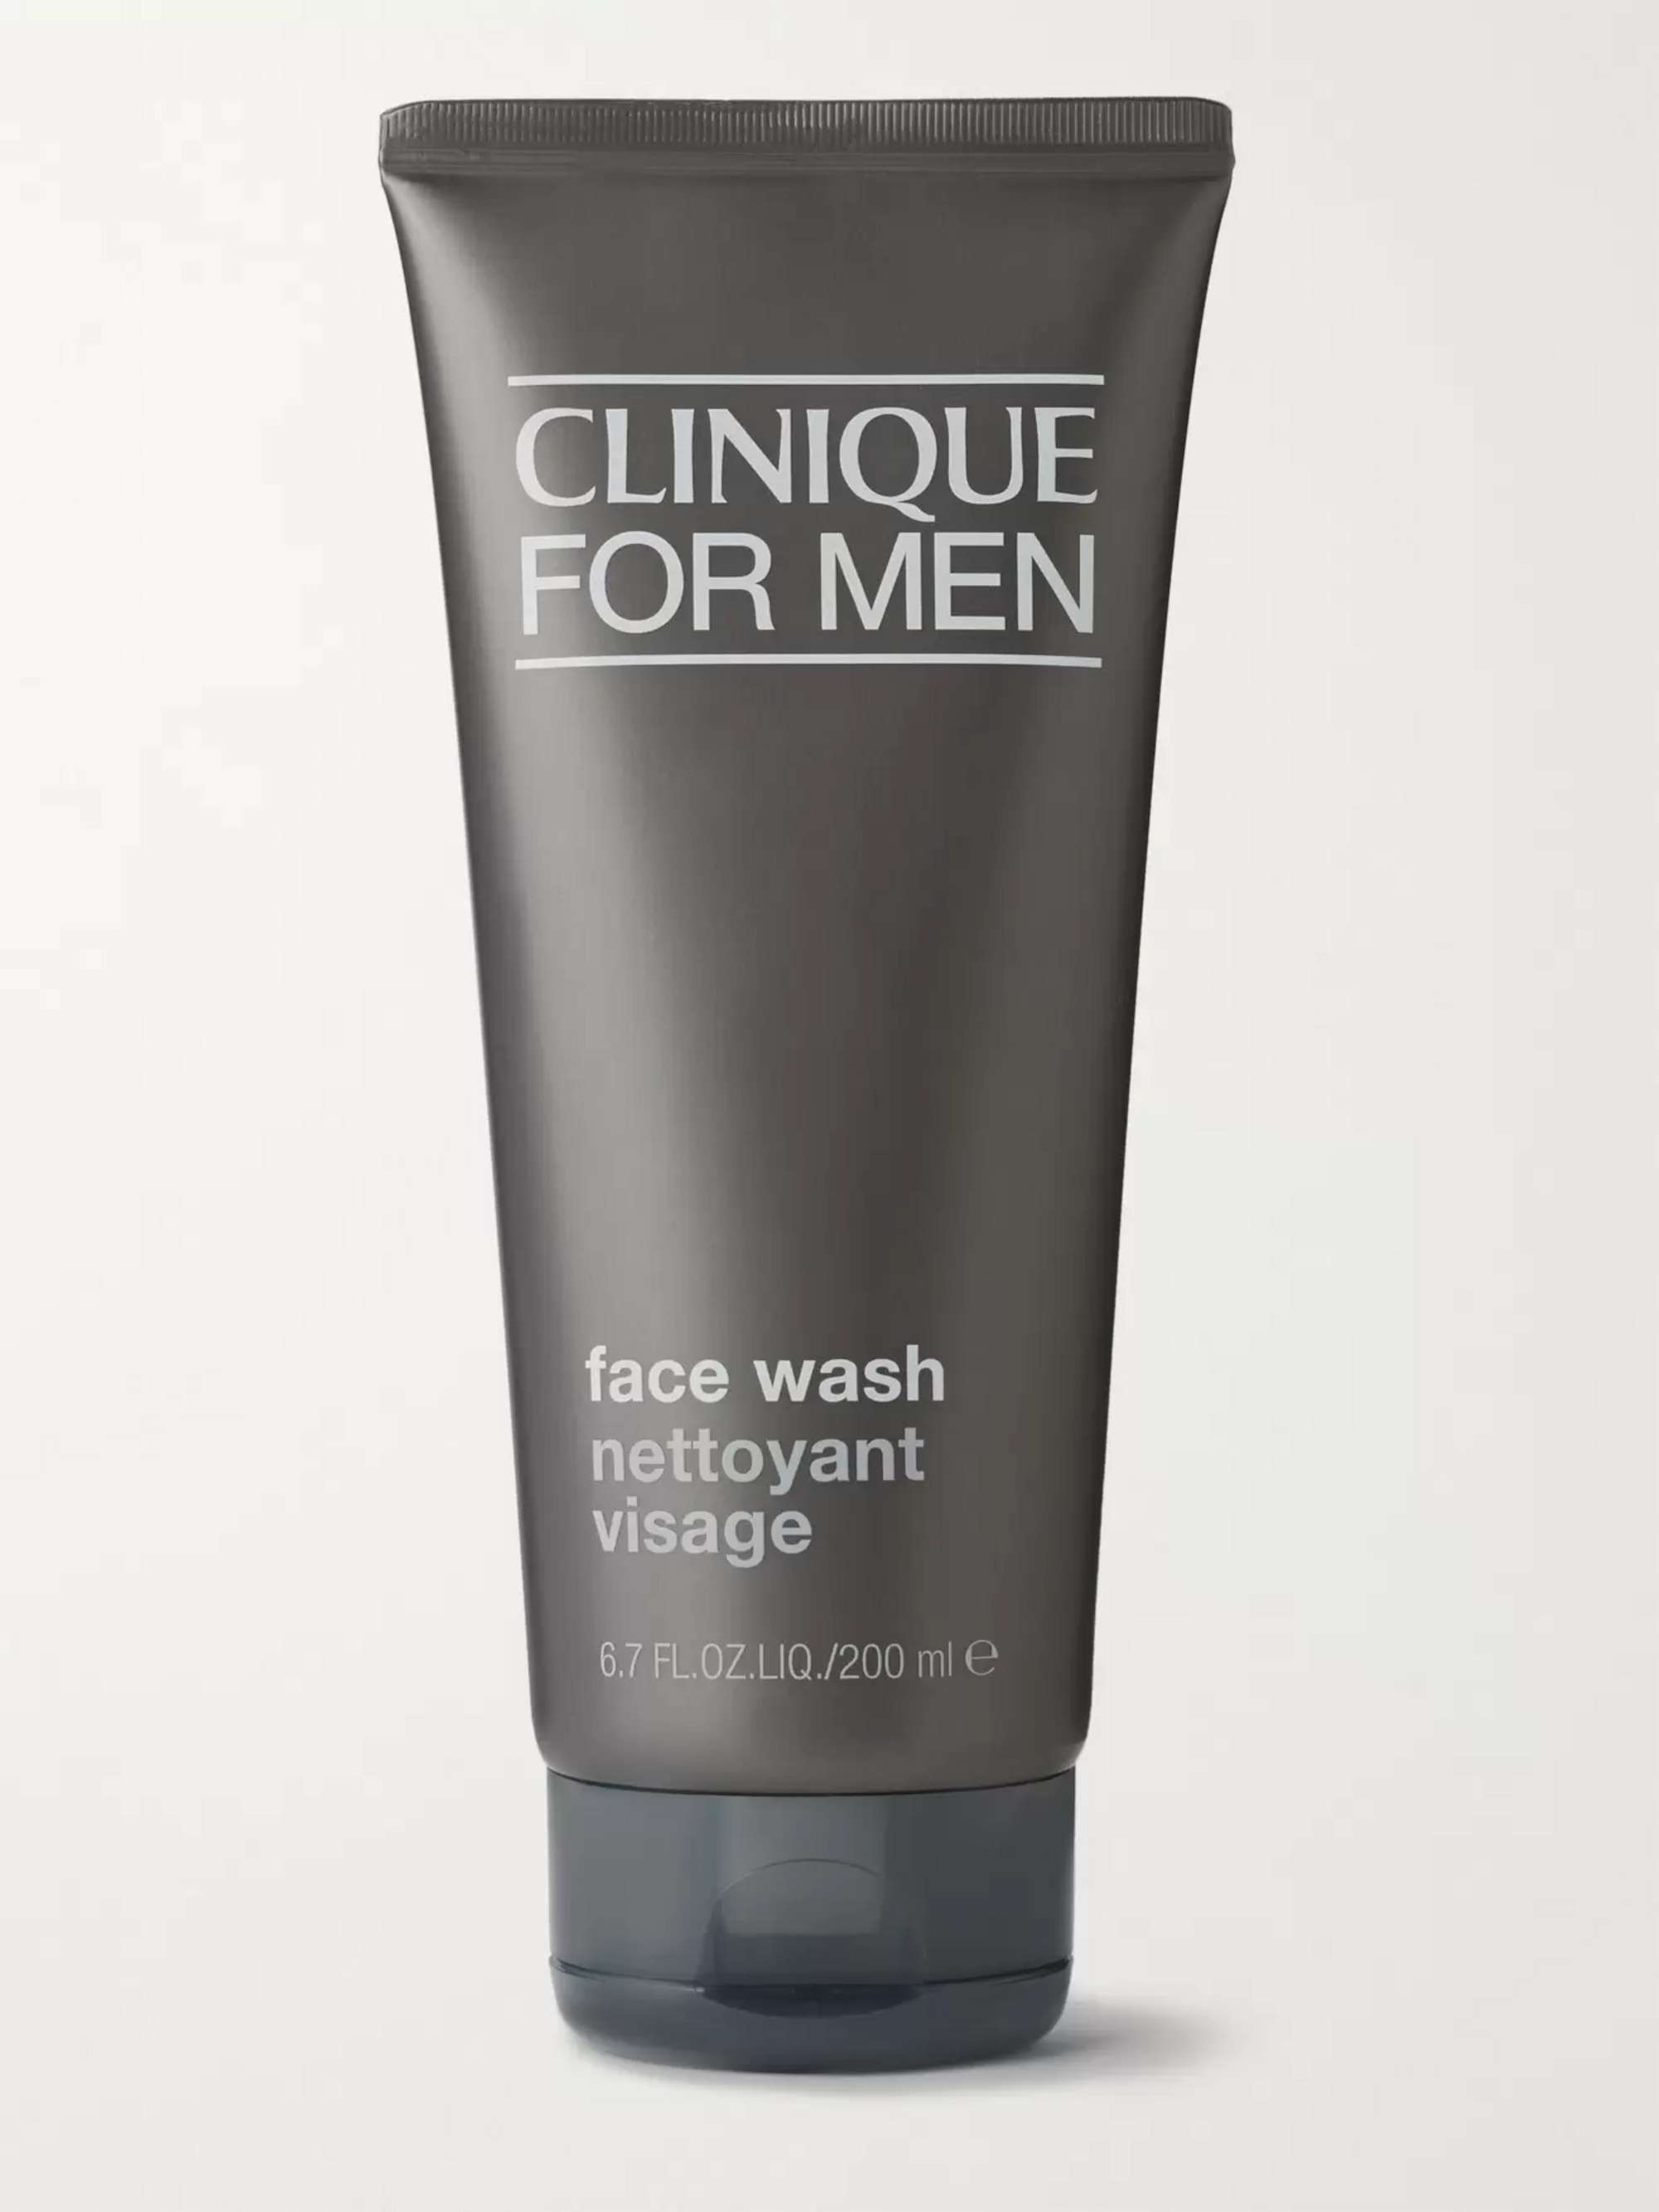 CLINIQUE FOR MEN Face Wash, 200ml